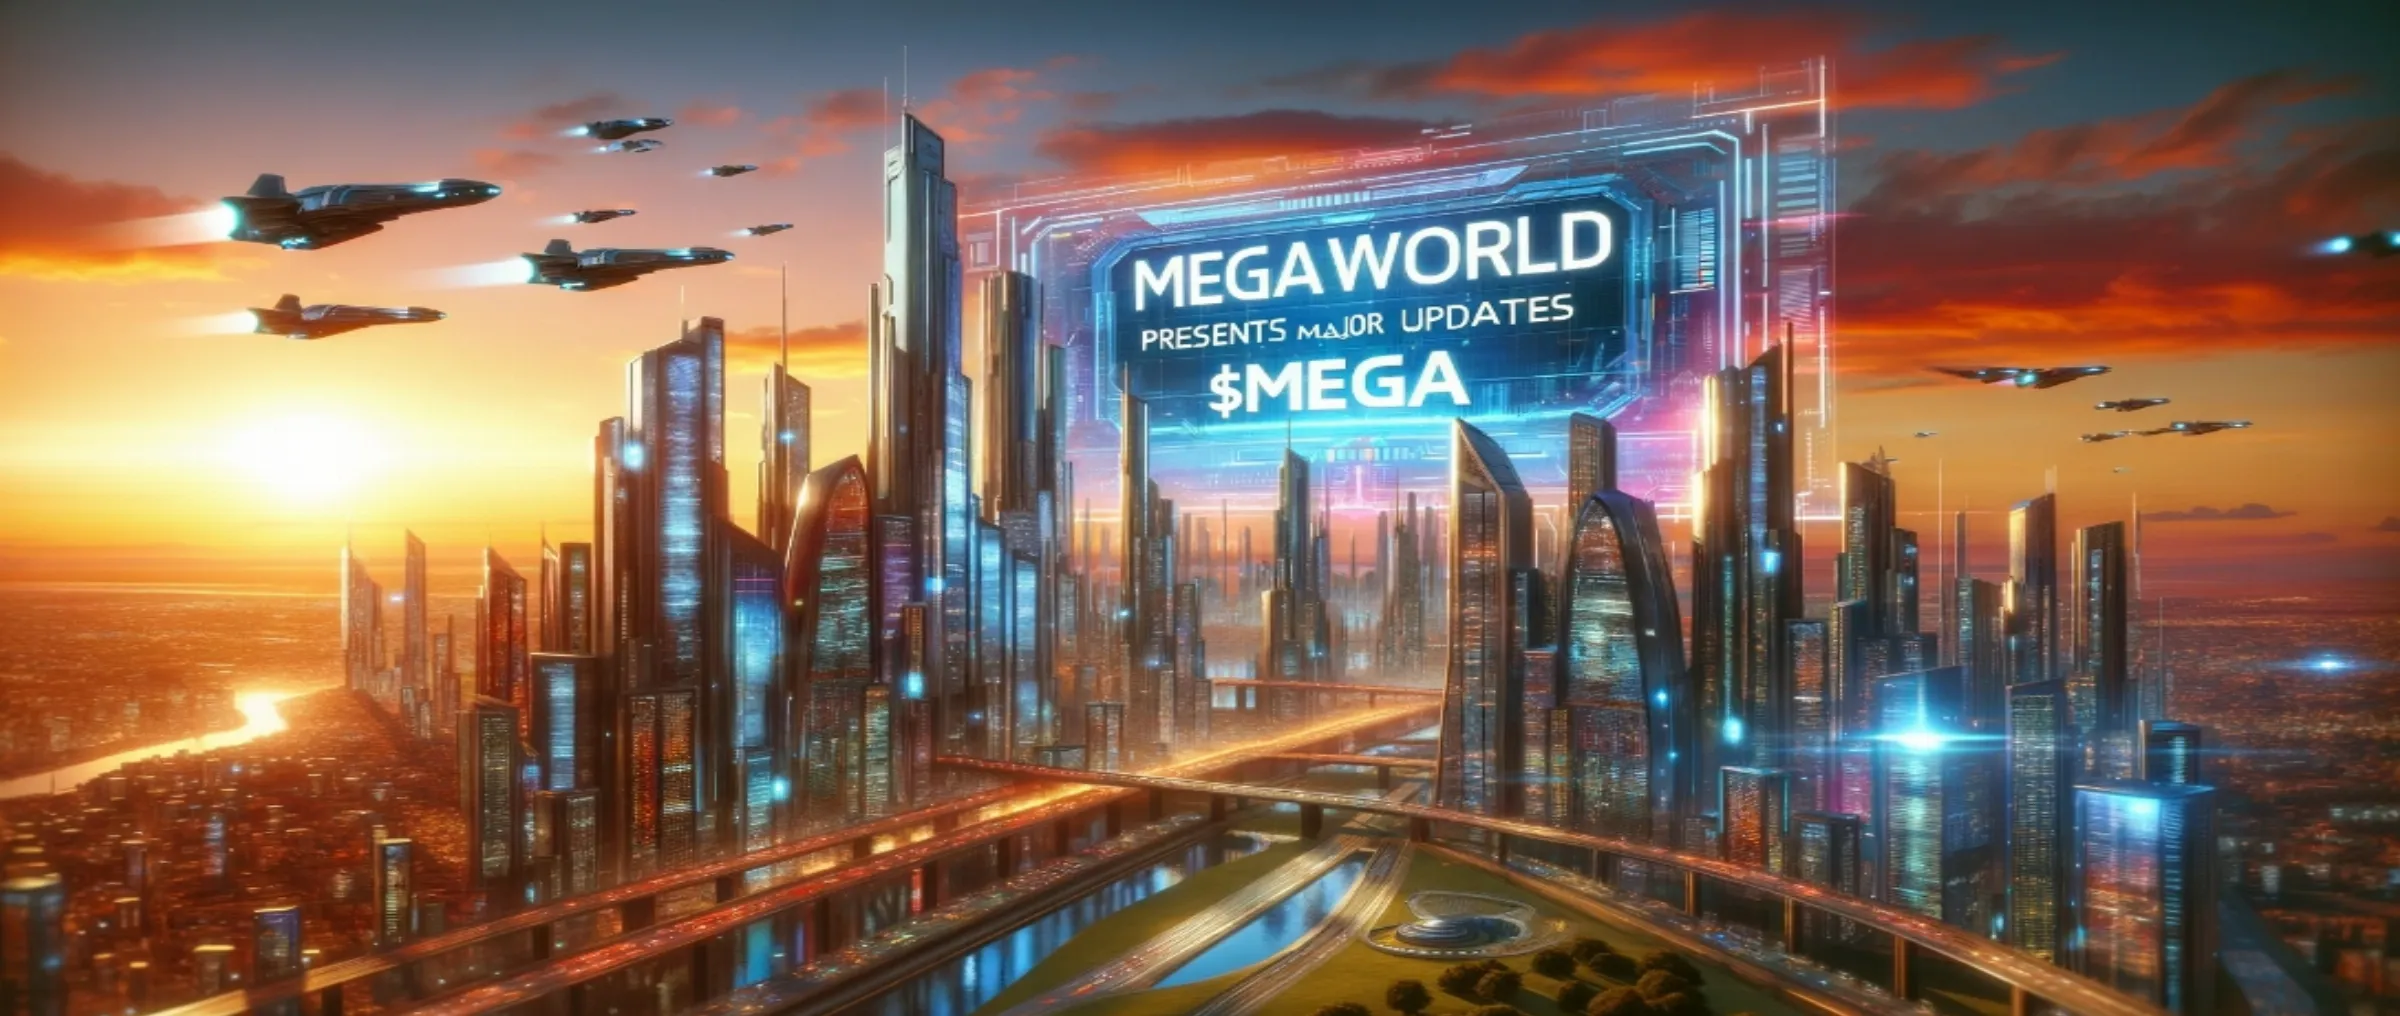 MegaWorld представляет важные обновления $MEGA